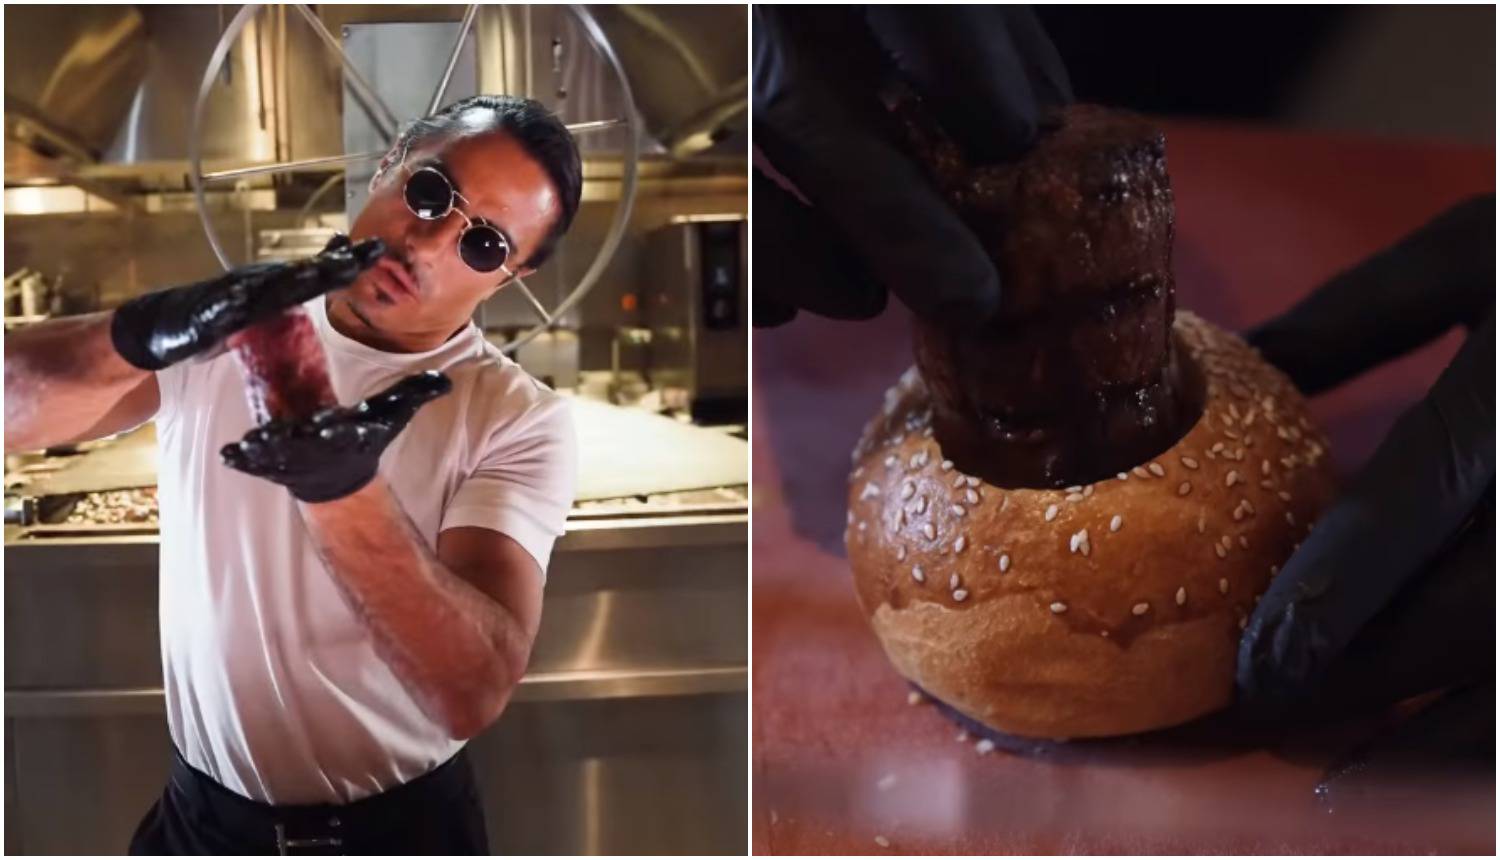 Slavni chef otkrio kako sprema novi burger, zgroženi pratitelji: 'Odvratno, tko bi ovo naručio?'